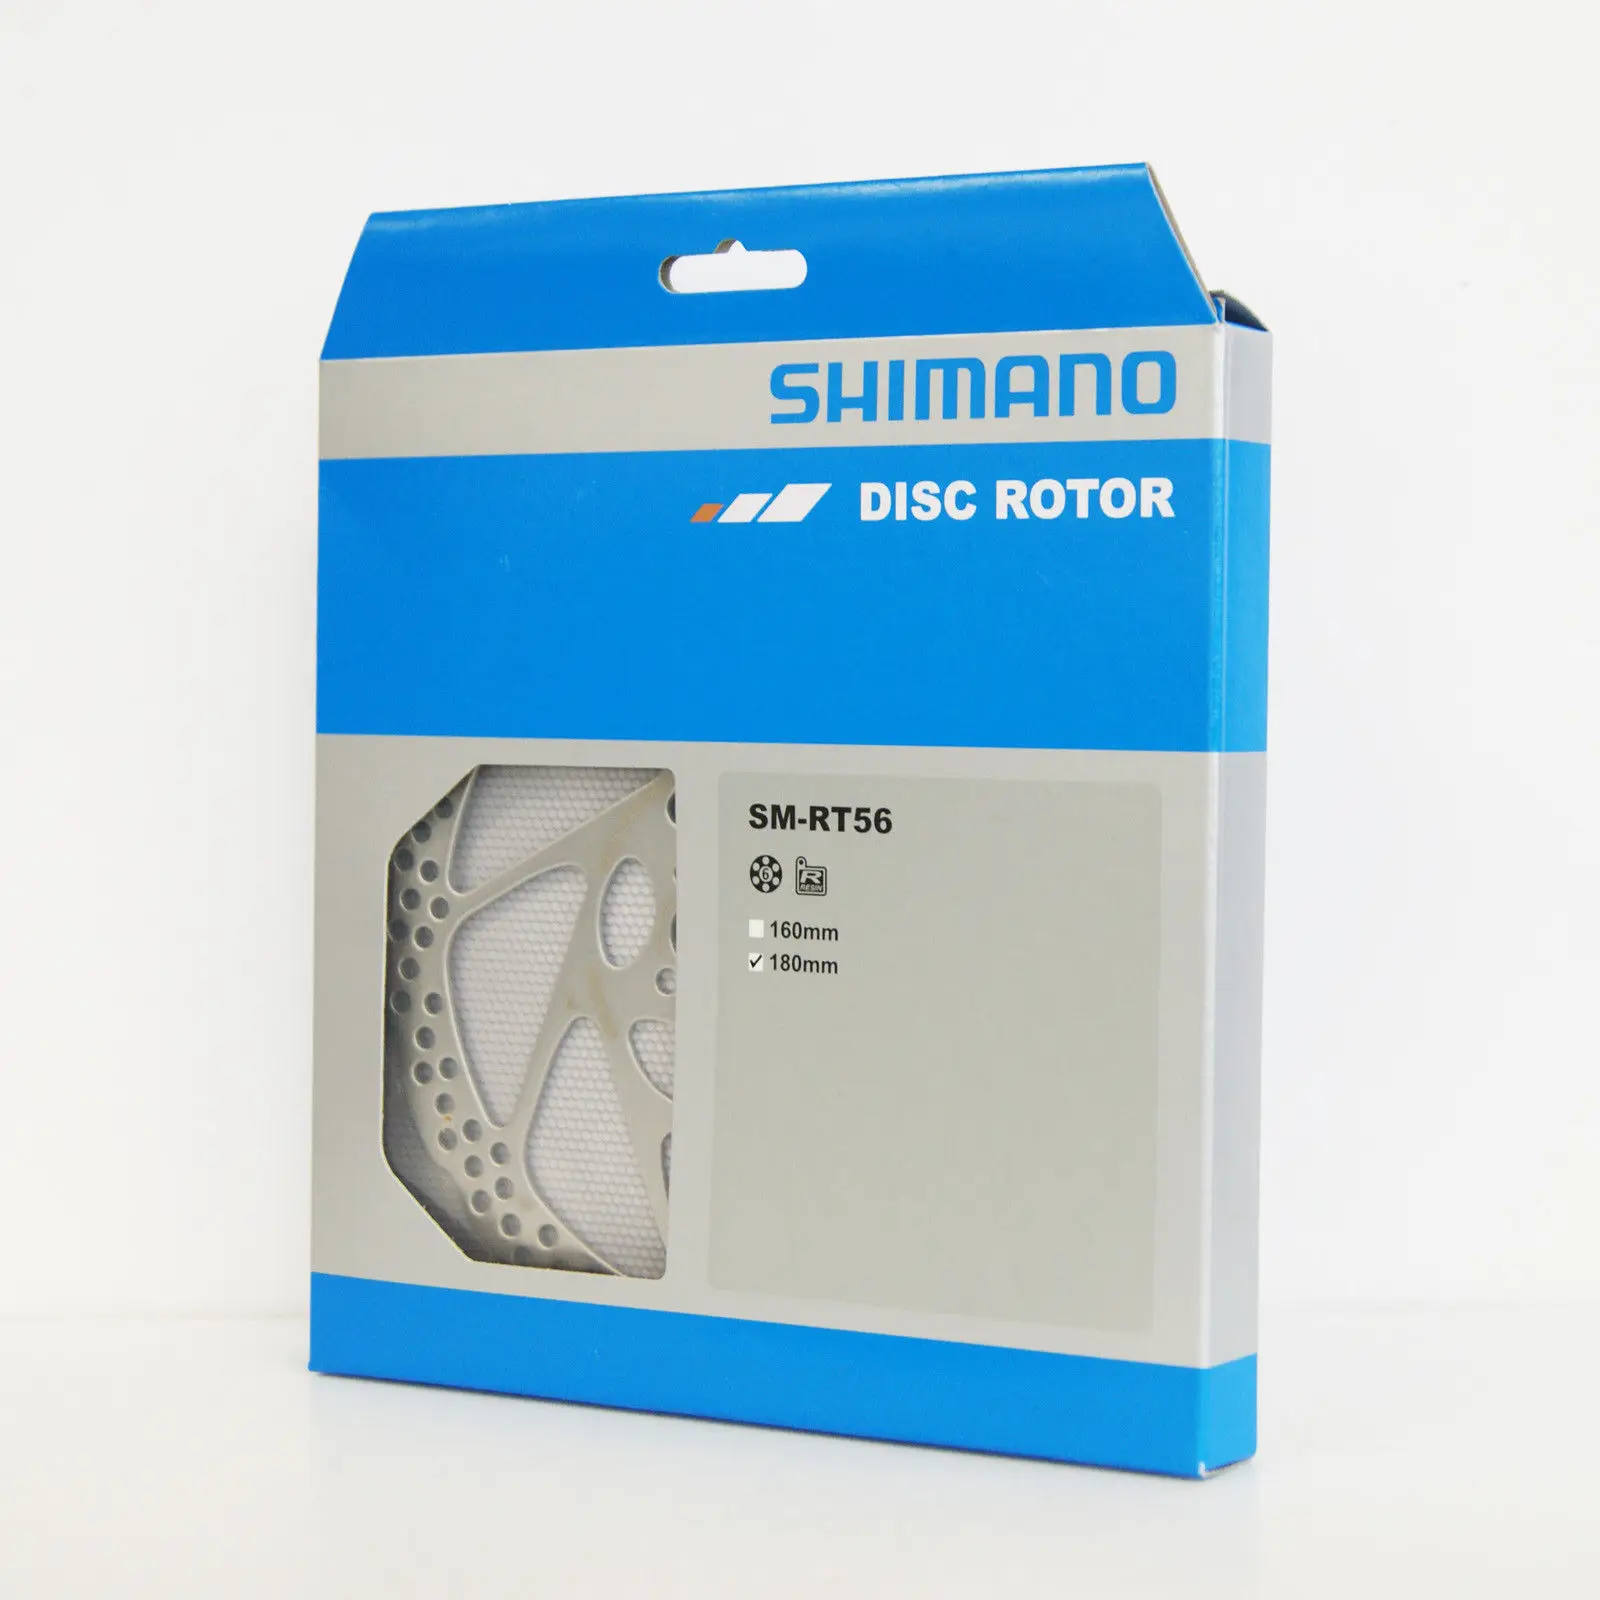 Shimano Deore велосипед SM-RT56 MTB велосипед 6-болт дисковый тормоз ротора 160 мм/180 мм велосипедный вынос руля - Цвет: 180mm